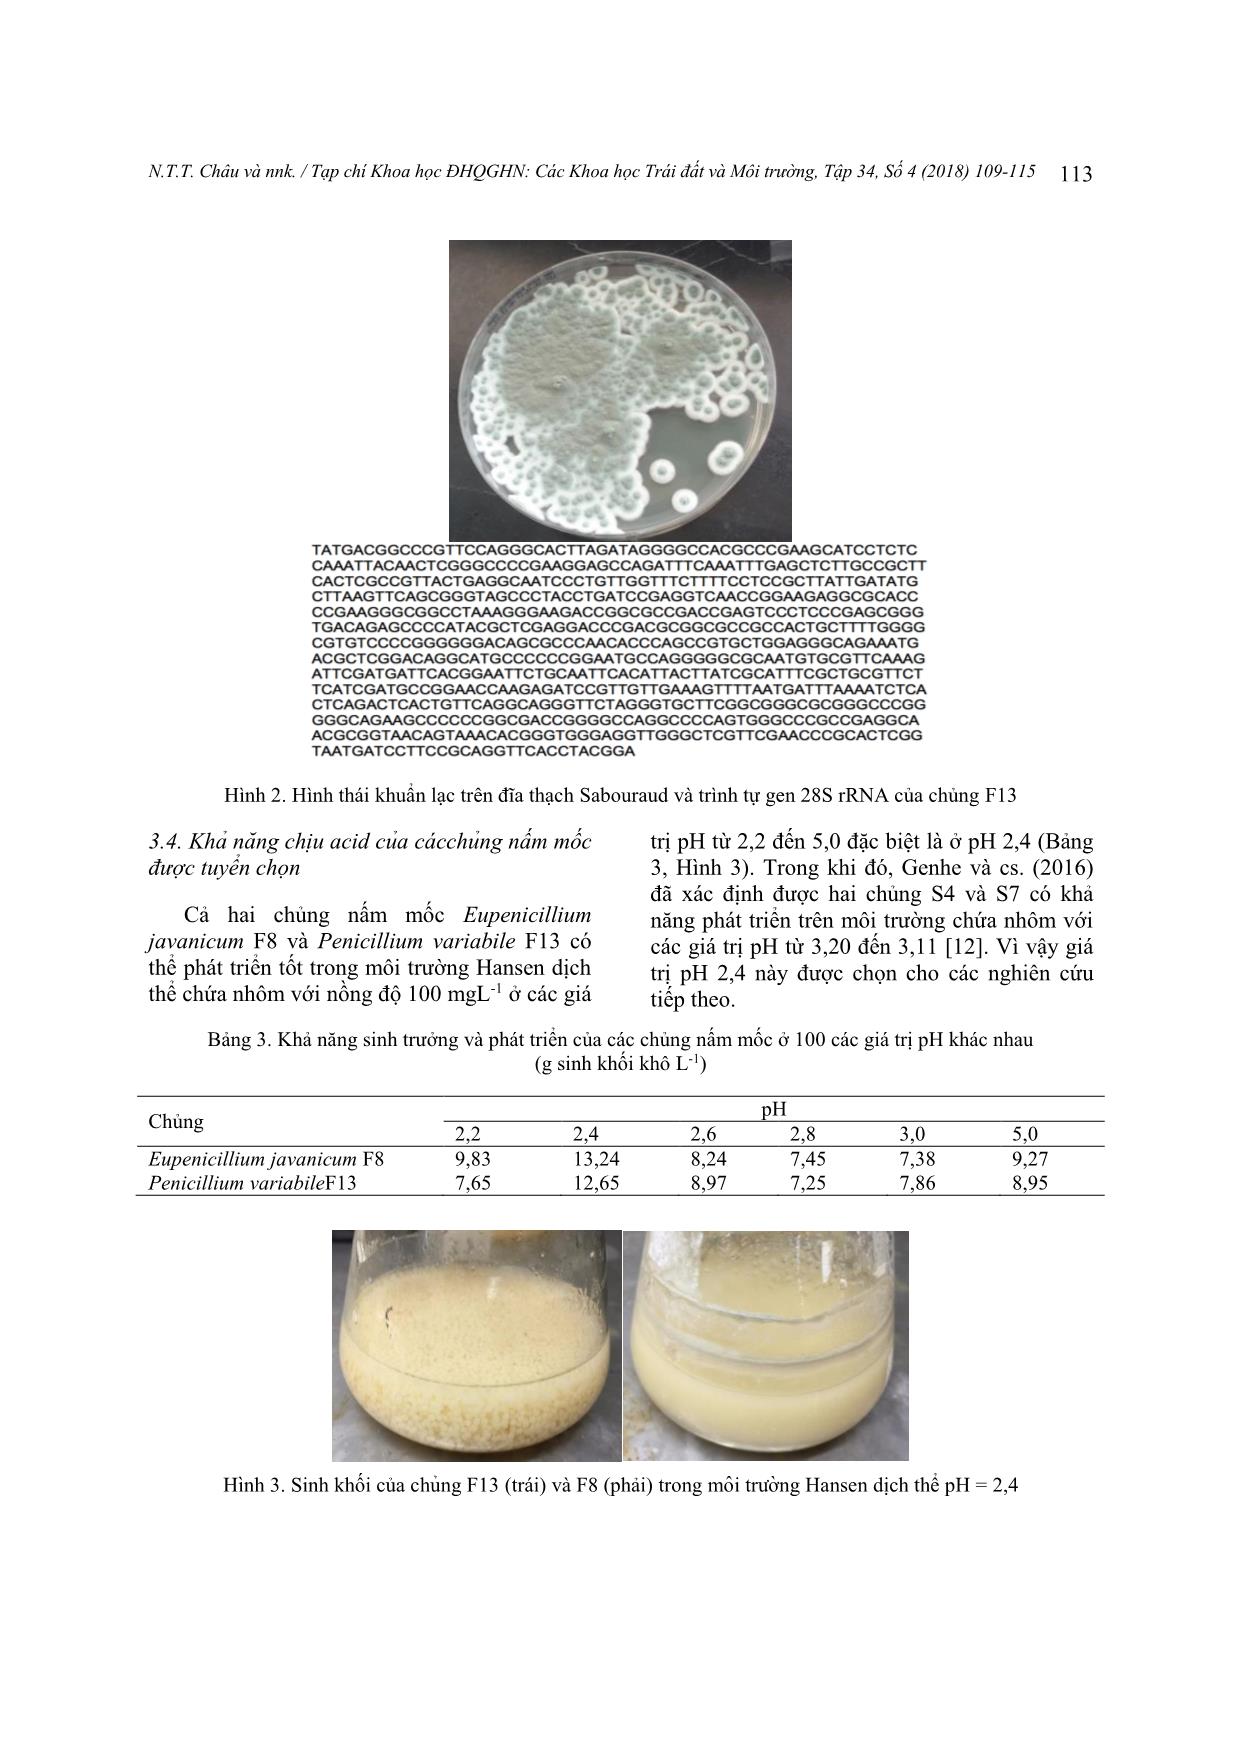 Khả năng chịu acid, kháng và hấp thụ nhôm của nấm mốc phân lập từ đất trồng chè vùng Tân Cương, Thái Nguyên trang 5